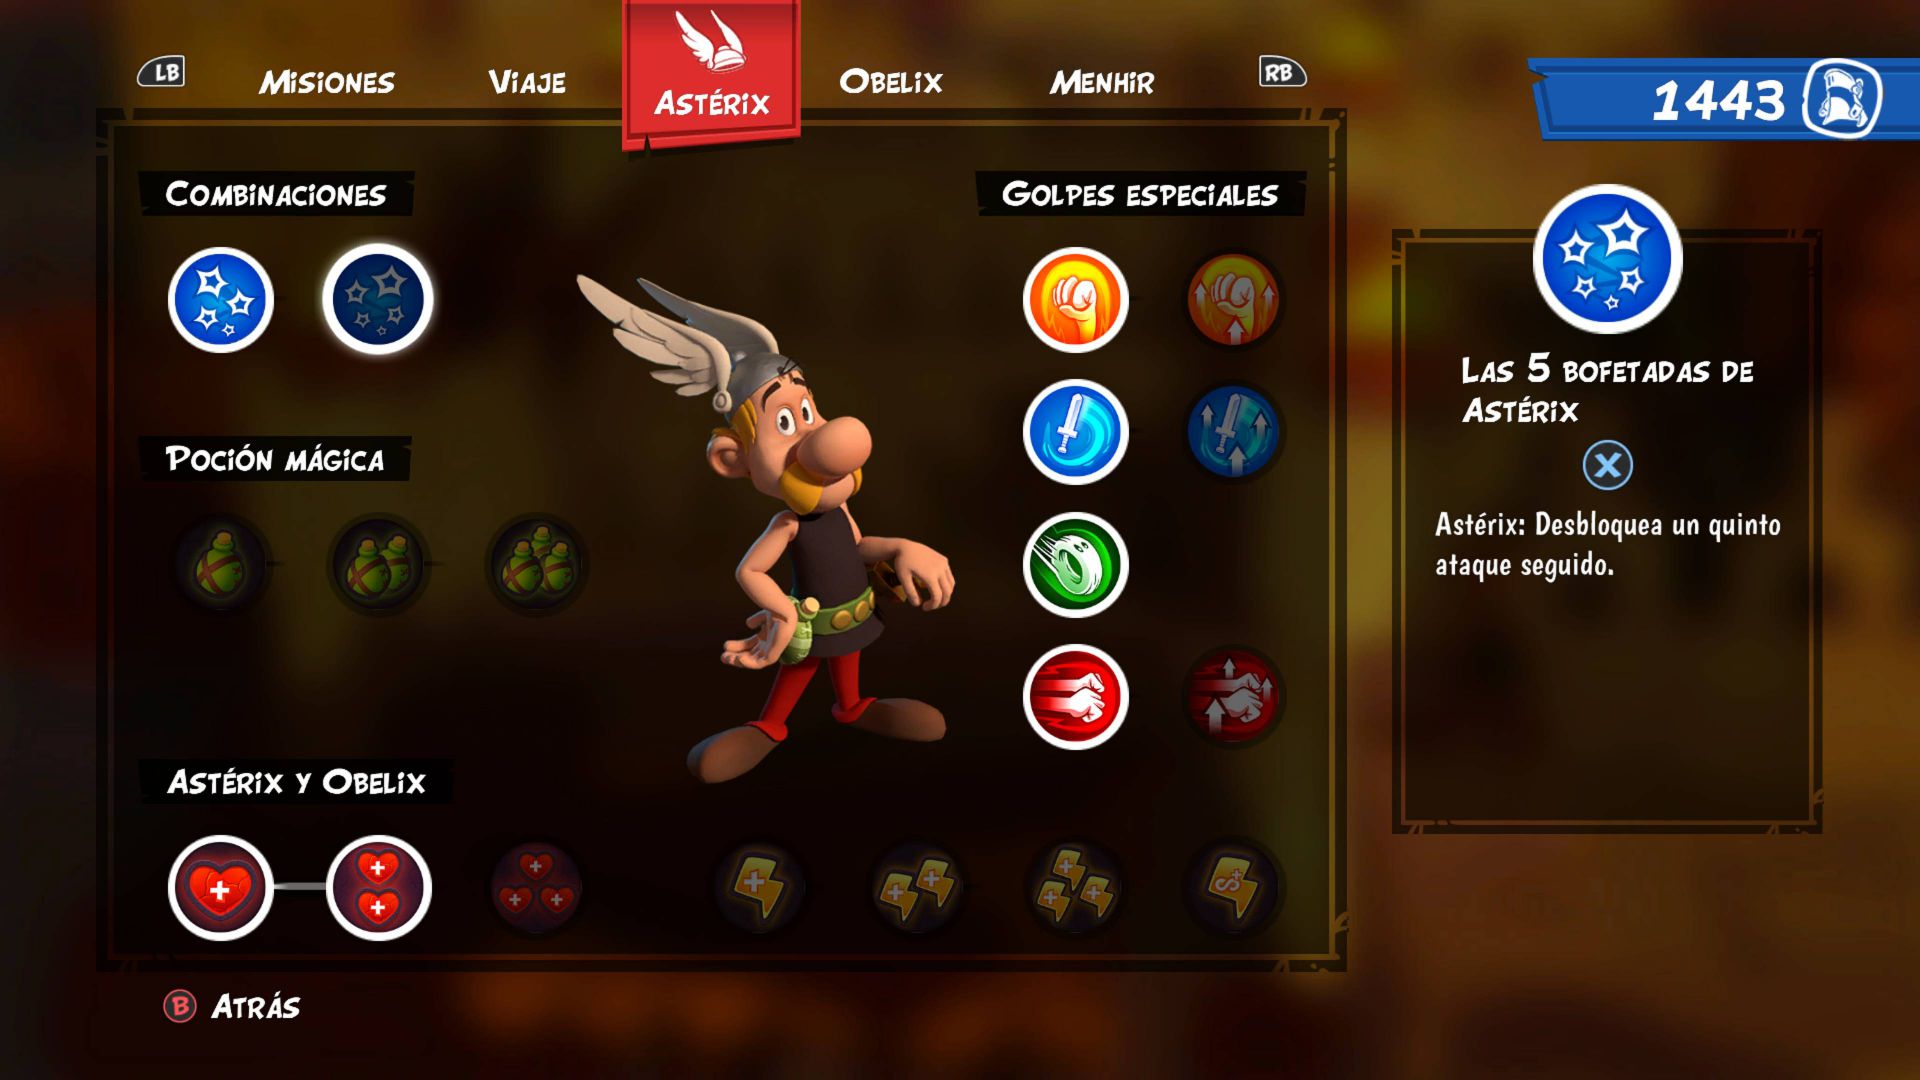 Asterix & Obelix XXL3,Astérix & Obélix XXL3: El Menhir de Cristal,Asterix & Obelix XXL3: The Crystal Menhir